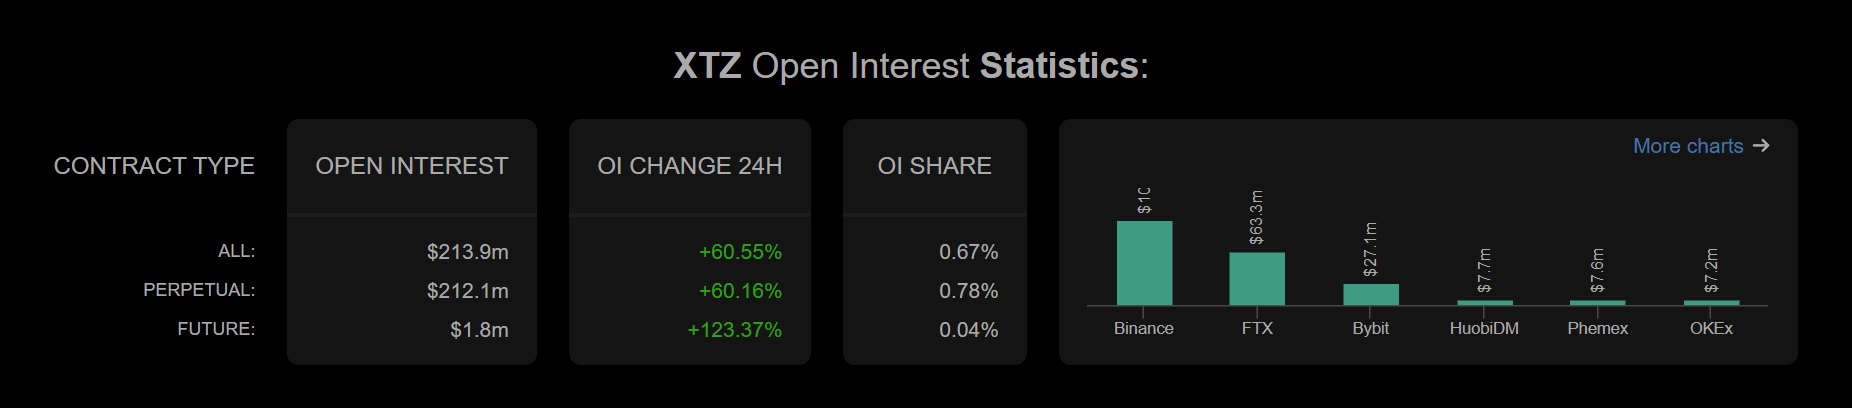 xtz open interest